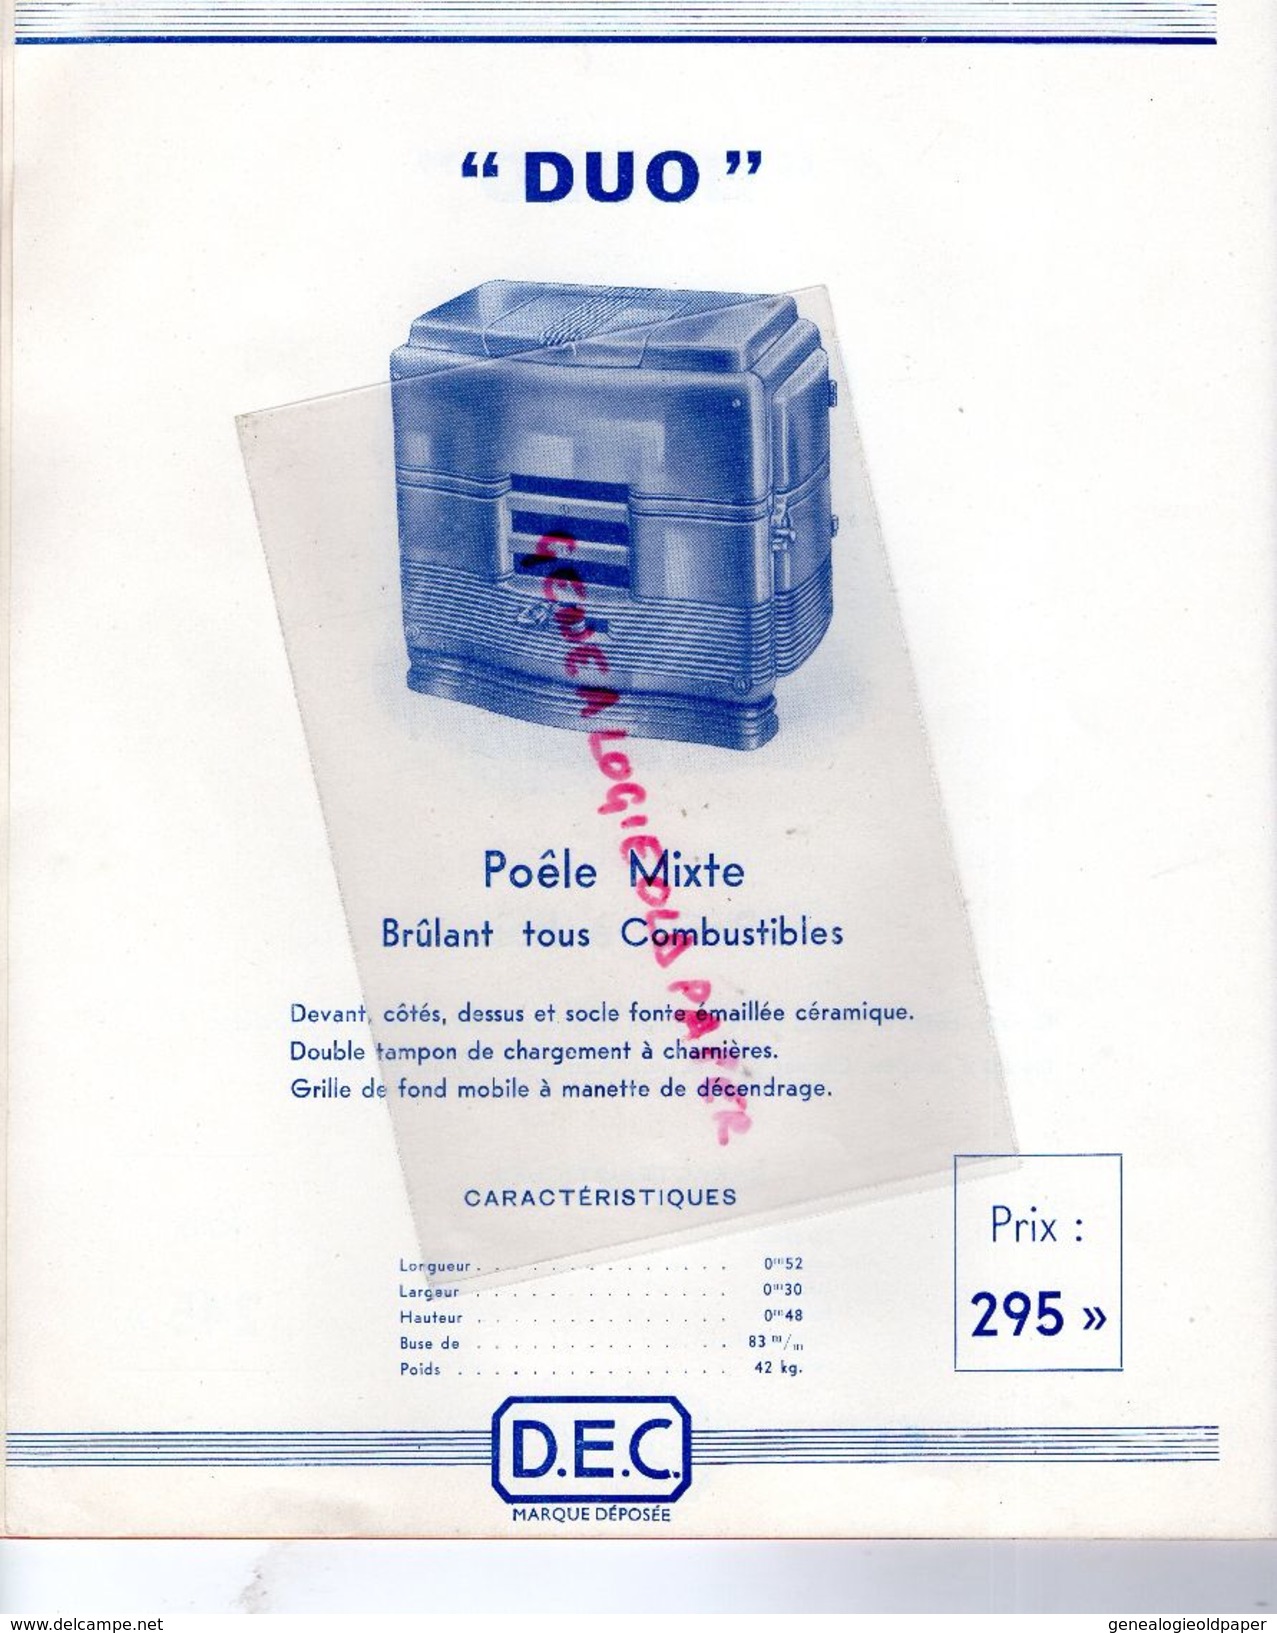 37- TOURS- PARIS- BORDEAUX-LYON-NANTES-REIMS- RARE CATALOGUE DAVUM 1937- CHAUFFAGE -96 RUE AMELOT-D.A.V.U.M.-POELE BOIS - Old Professions